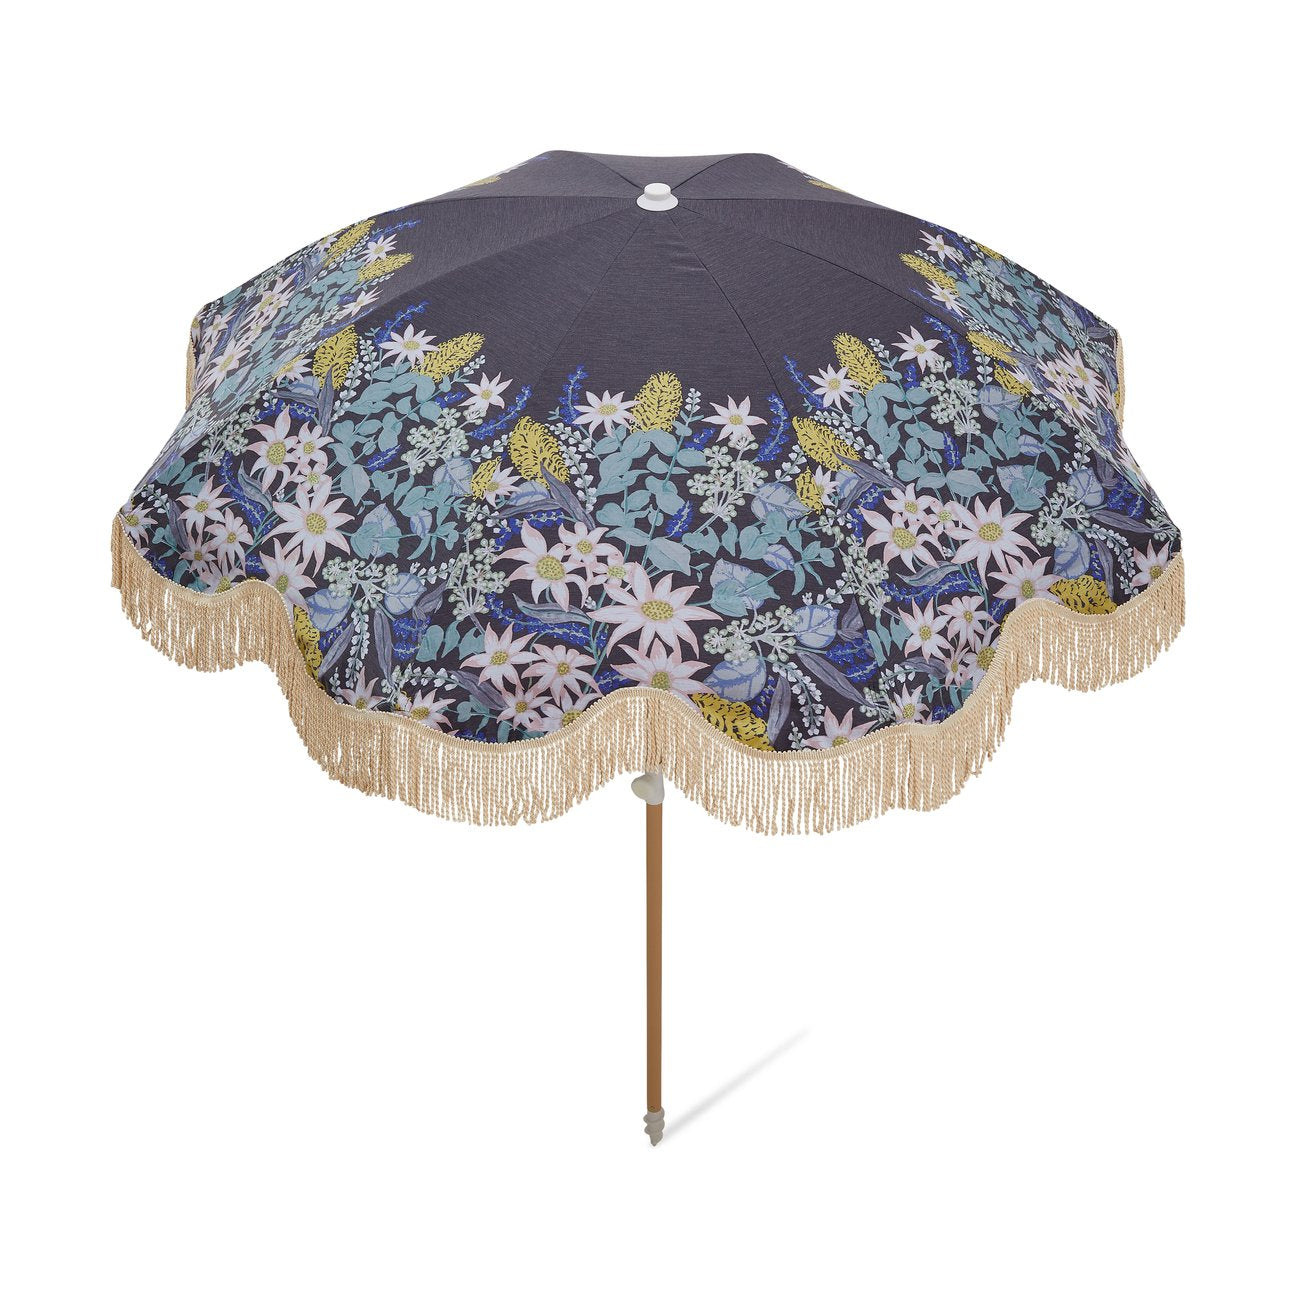 Salty Shadows Beach Umbrella - Flora